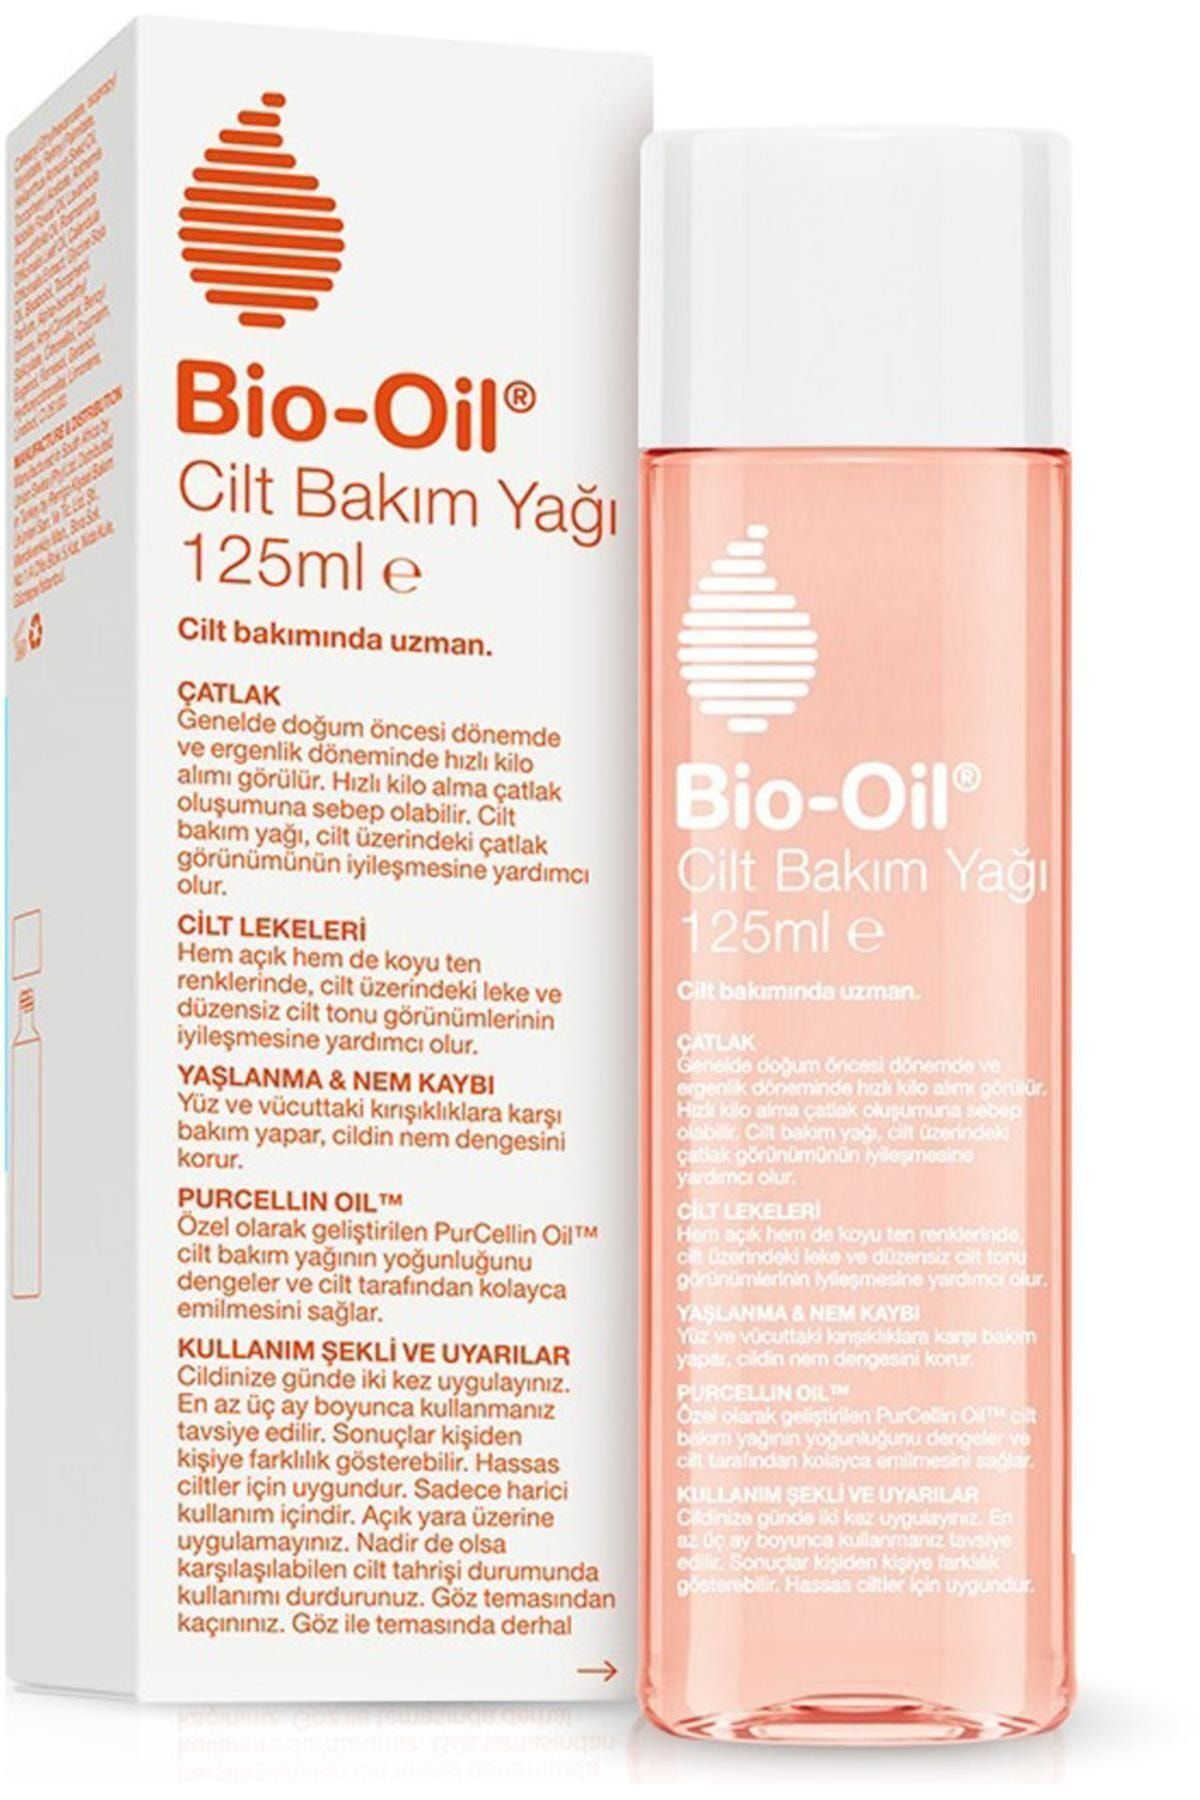 Bio-Oil Cilt Bakım Yağı Yeni Formül 125 Ml